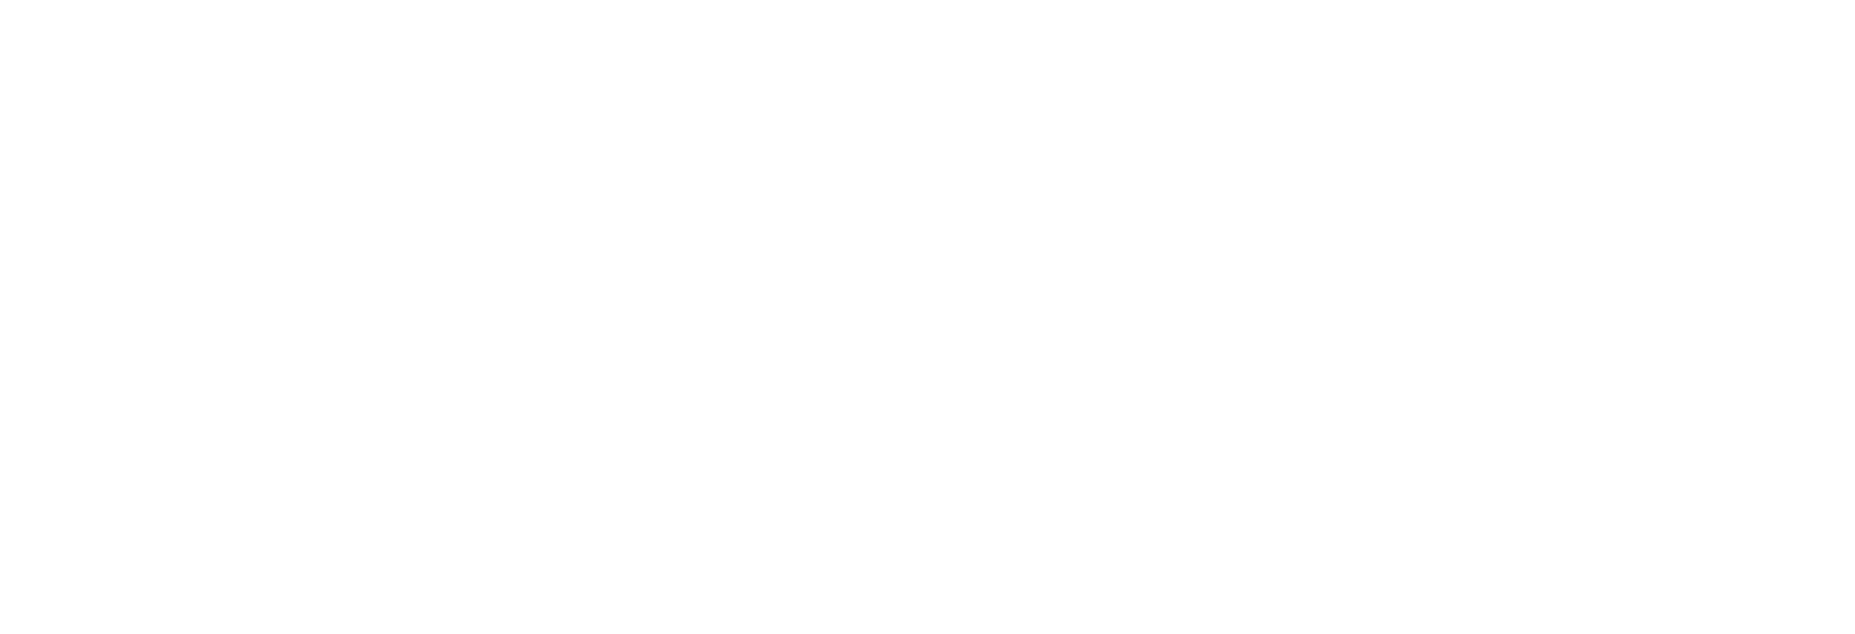 Пример детализации ветвей диаграммы Исикавы.